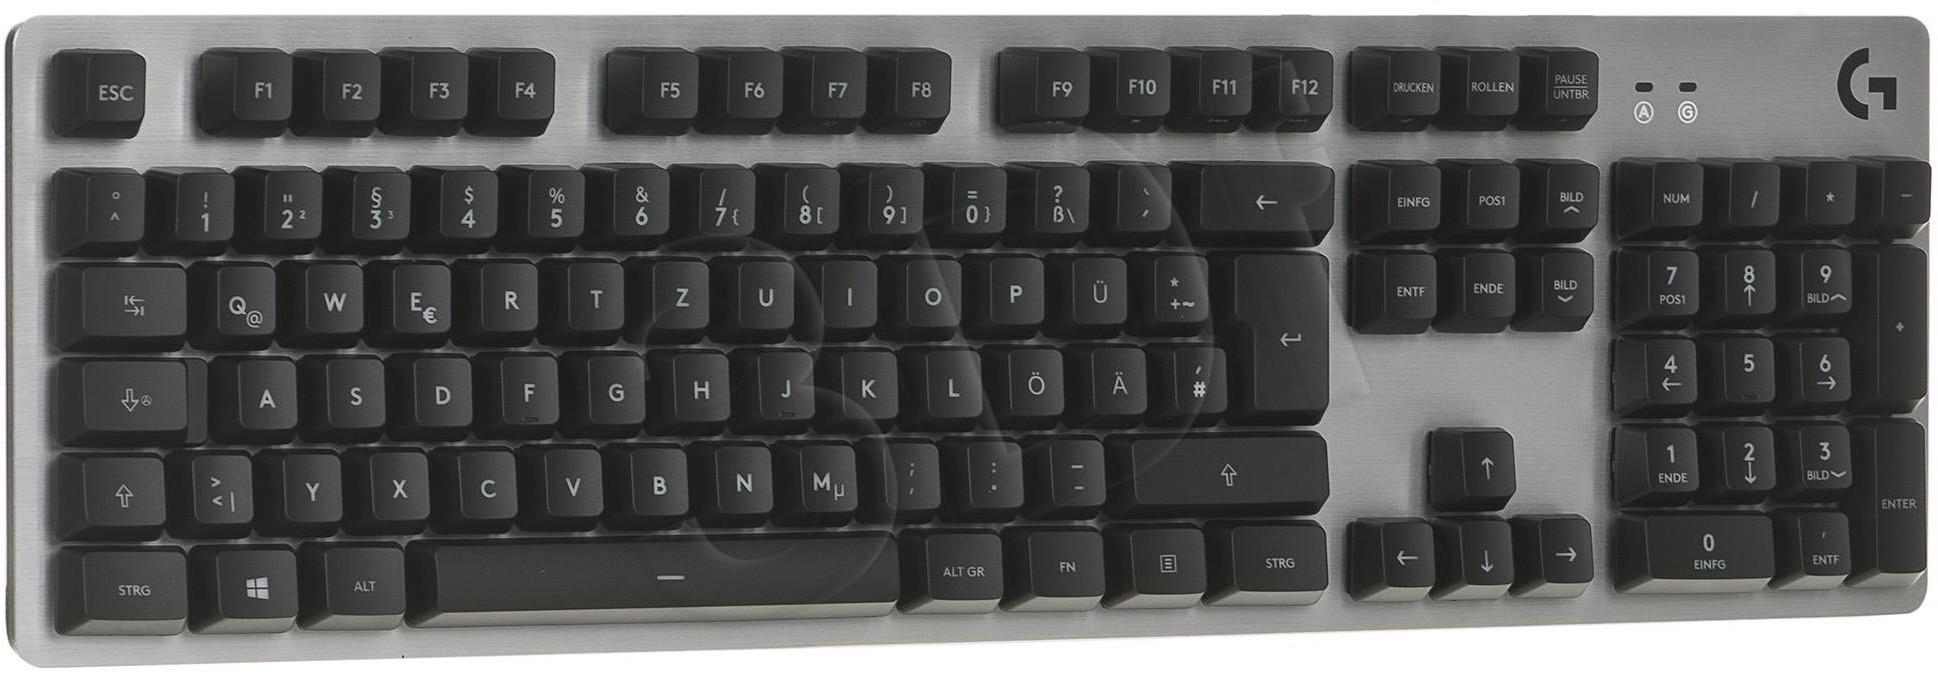 Logitech G413 Mechanical Gaming Keyboard Silver szara (920-008476)